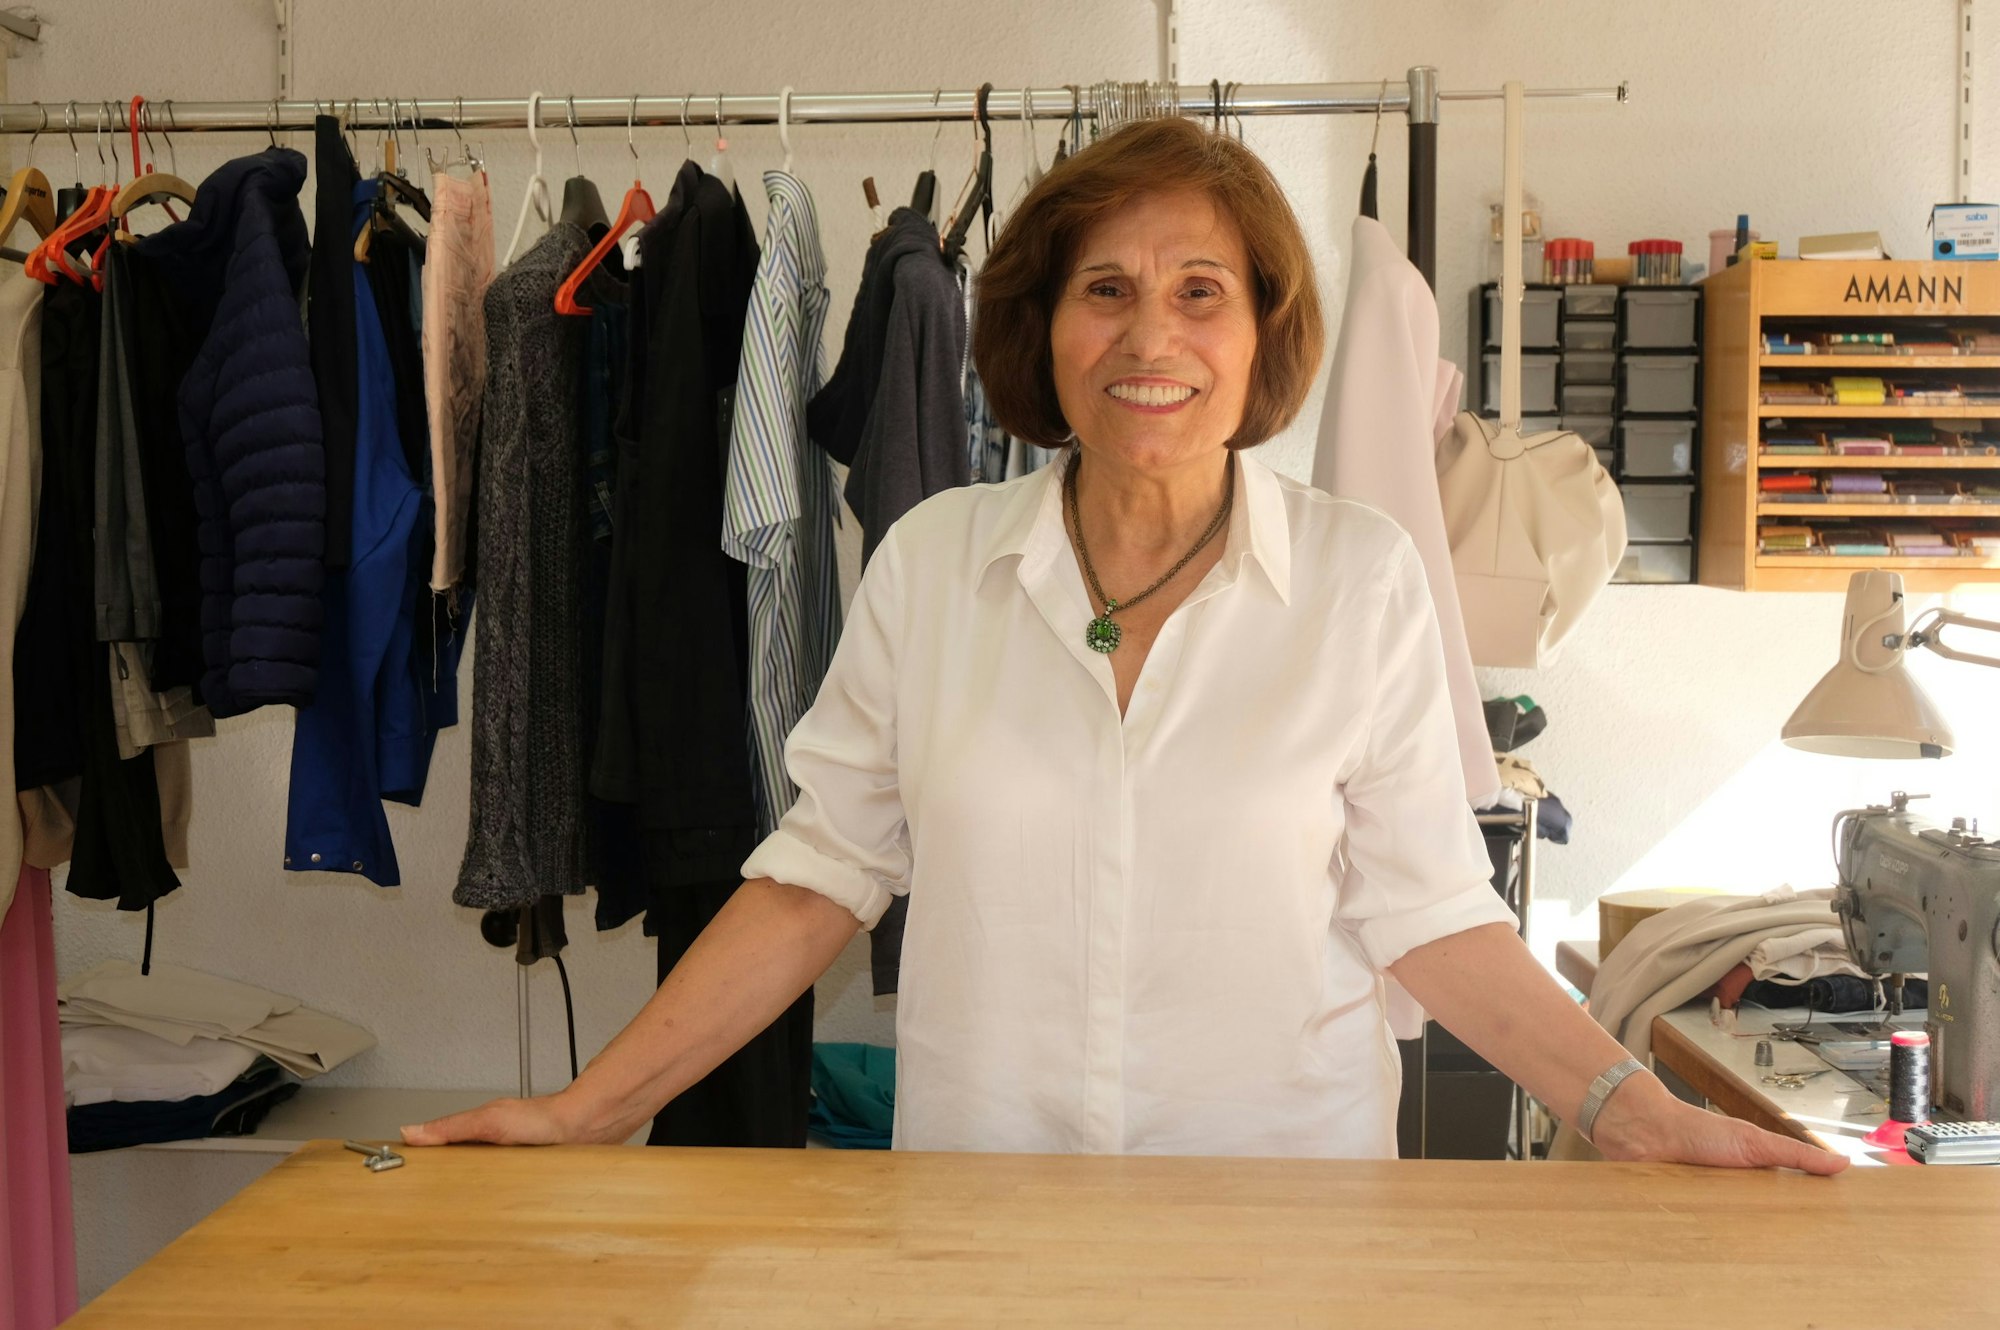 Eine Frau mit brünettem Pagenkopf und einer weißen Bluse steht hinter einer Ladentheke, hinter ihr hängen Kleider, eine Nähmaschine steht auf einem Tisch.